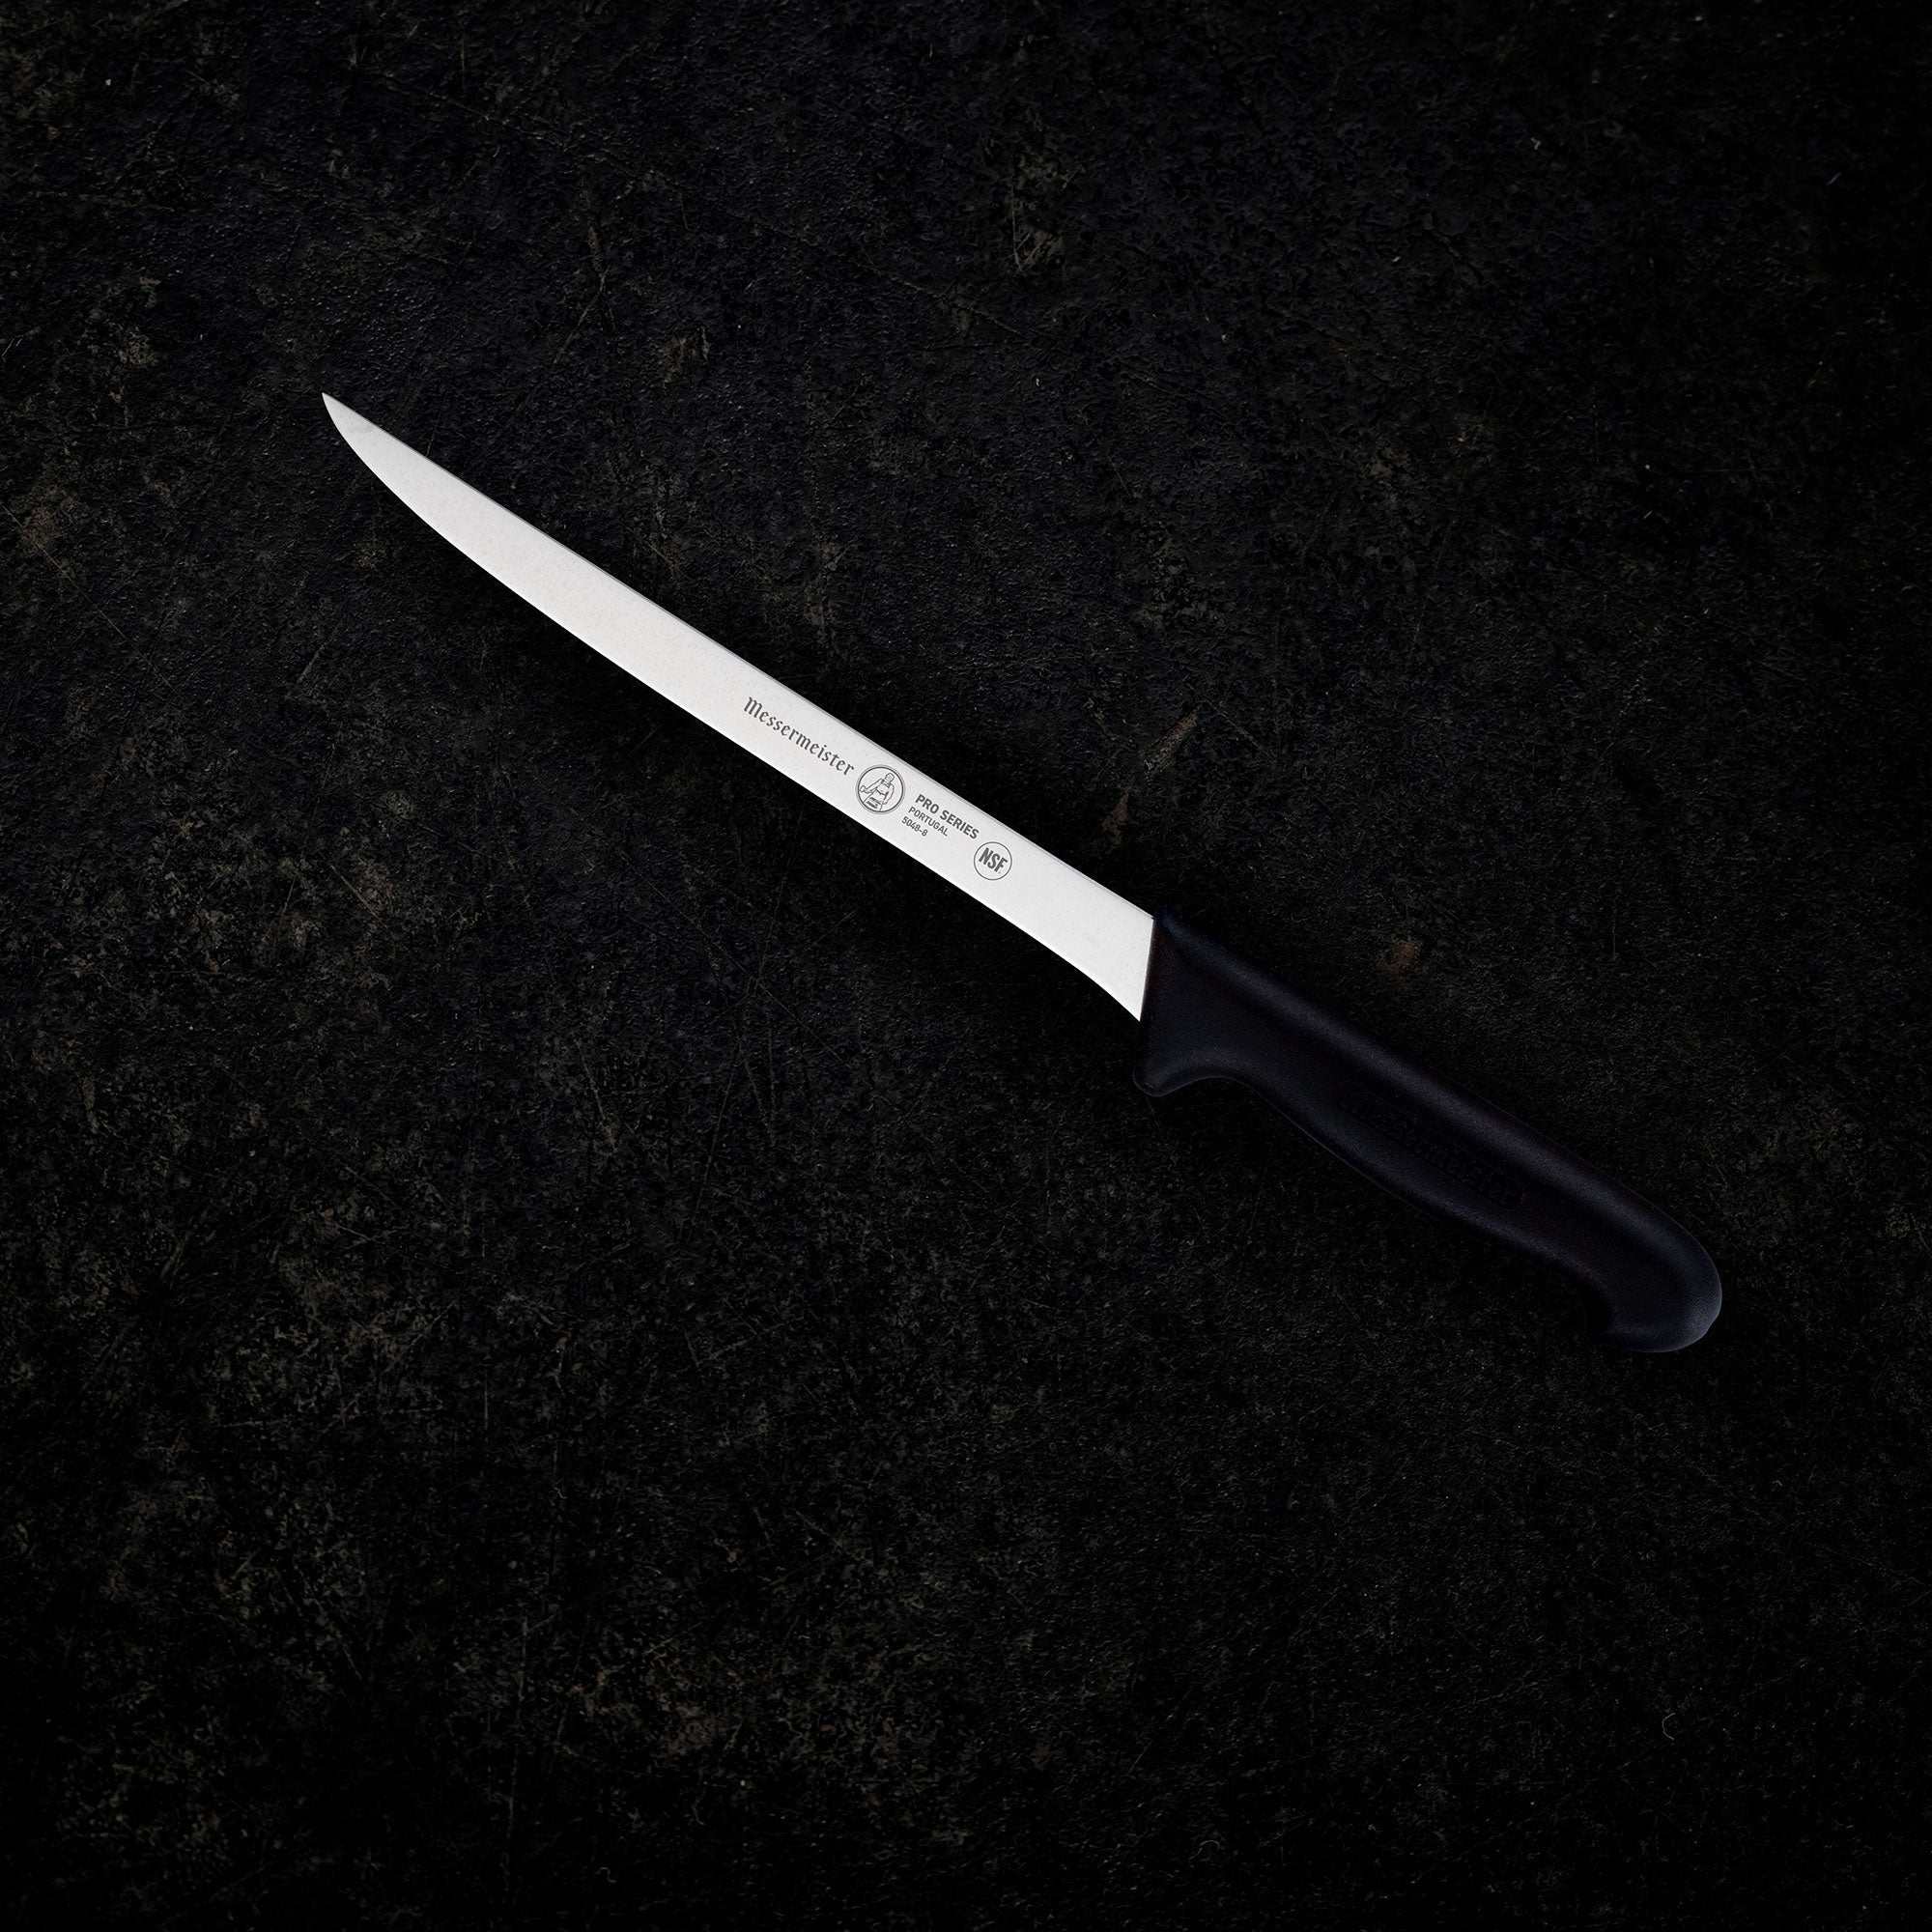 Messermeister Four Seasons 8 in. Flexible Fillet Knife